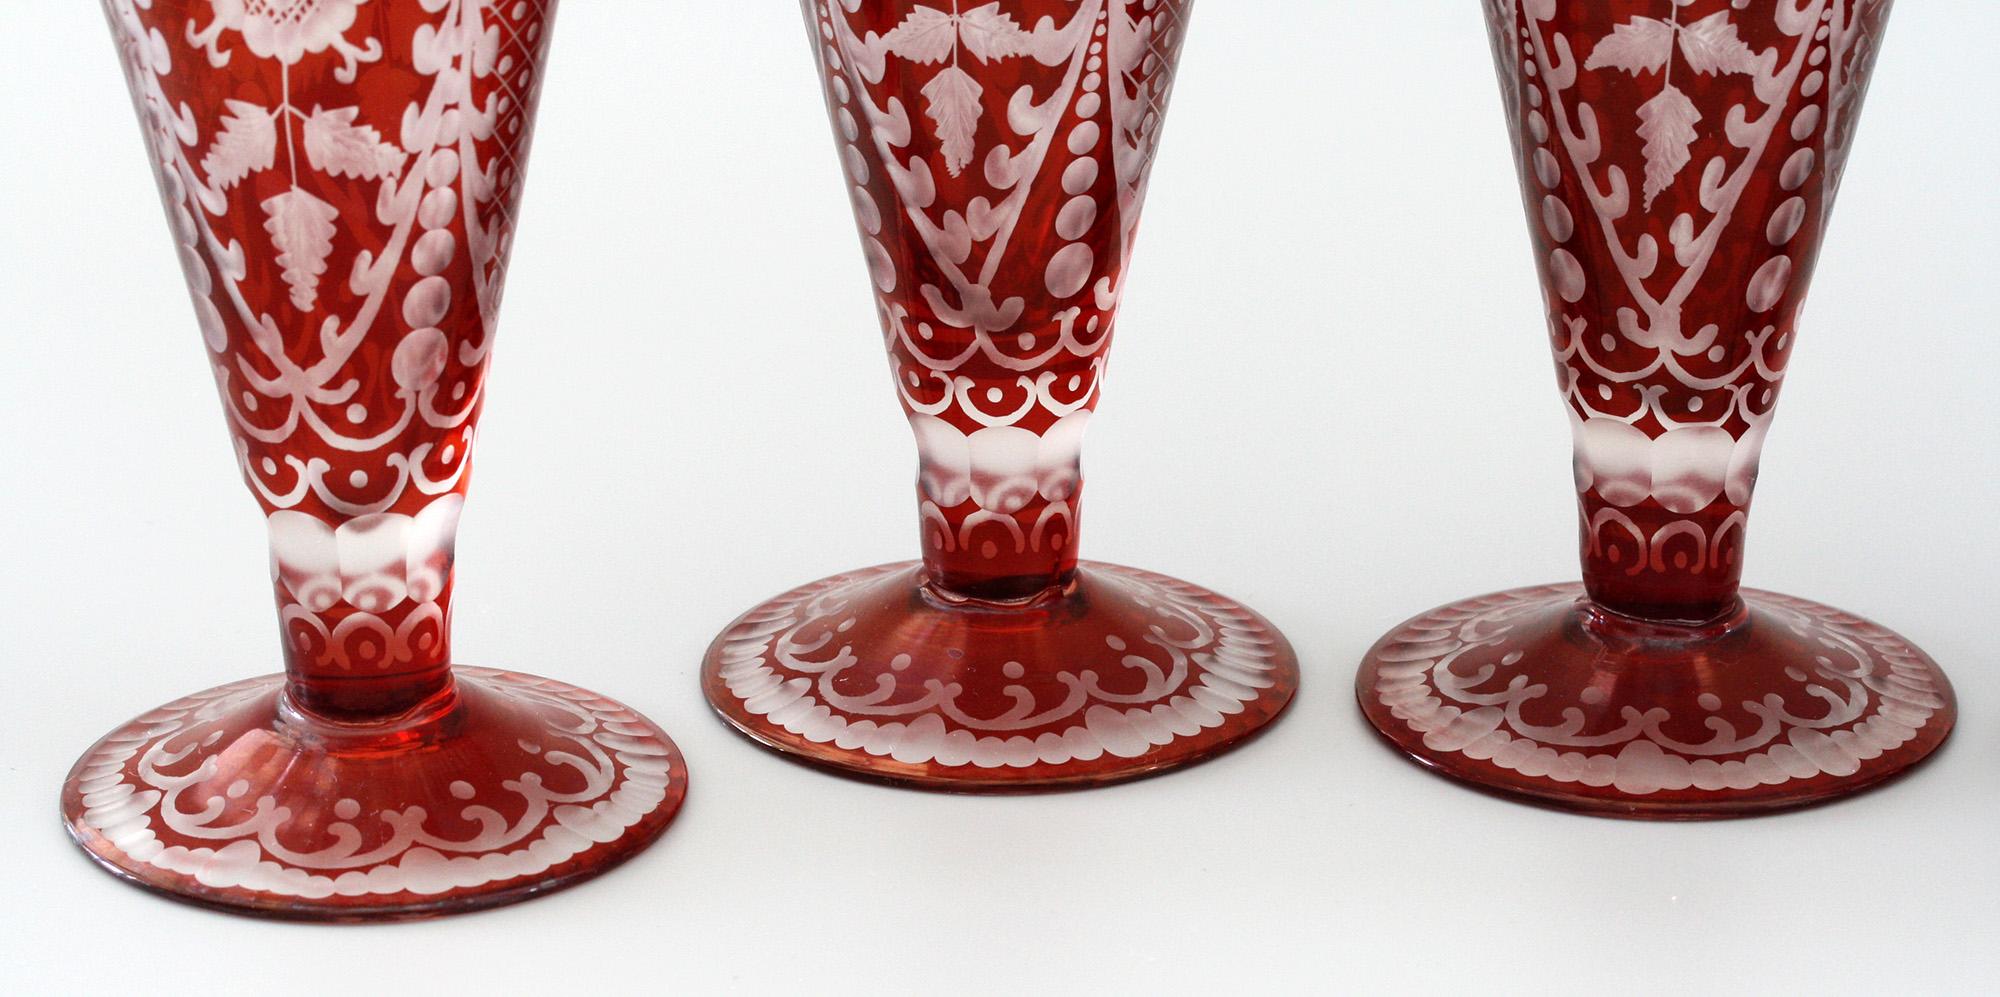 Une rare et exceptionnelle qualité d'un ensemble antique de six verres à cordial de Bohème en rubis flamboyant avec de superbes motifs taillés et gravés à l'acide datant d'environ 1890. L'ensemble, transmis par la famille de nos propriétaires, se